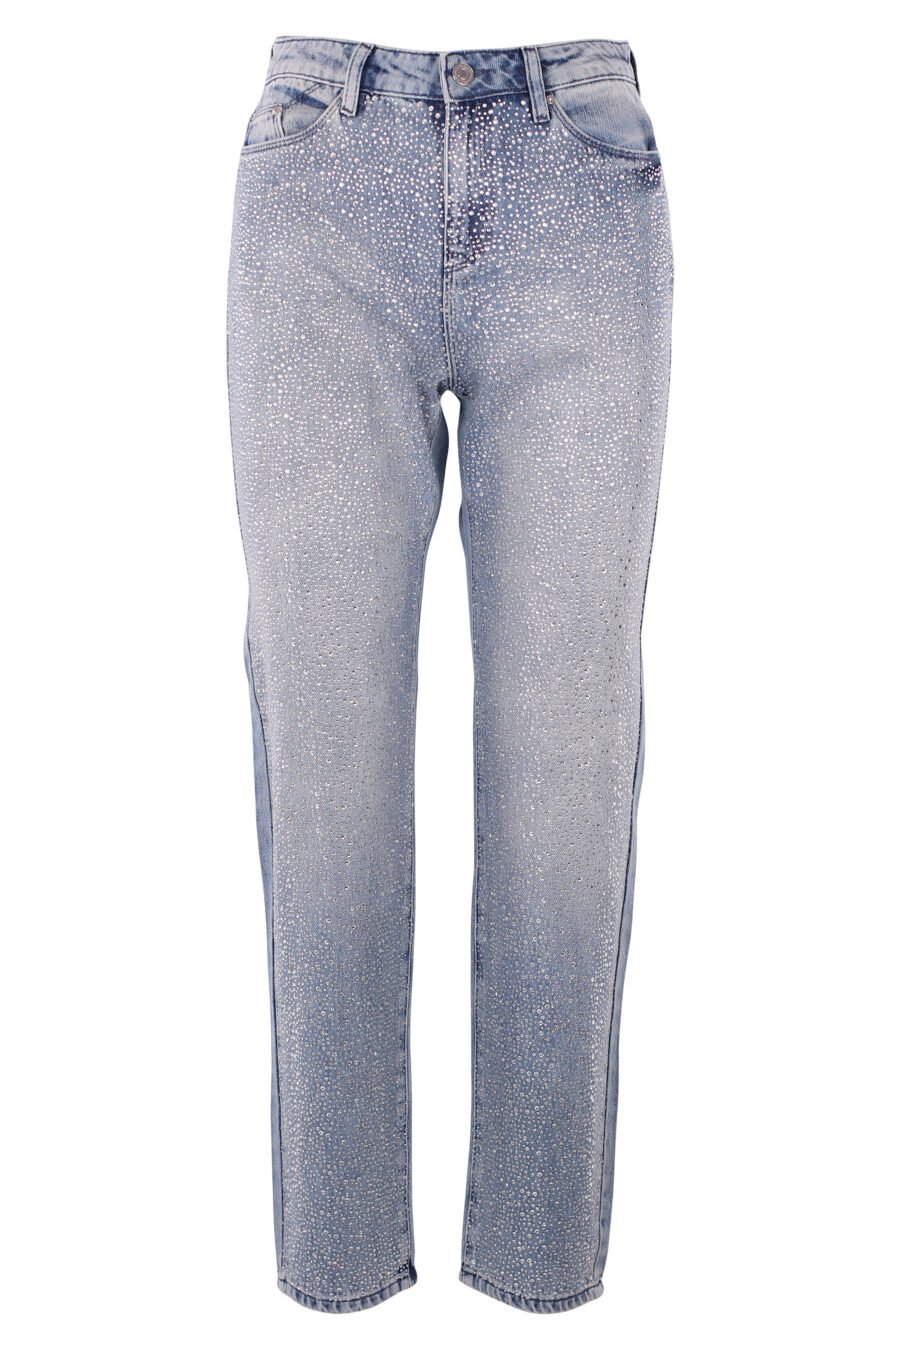 Blaue Jeans mit Strasssteinbesatz - IMG 6323